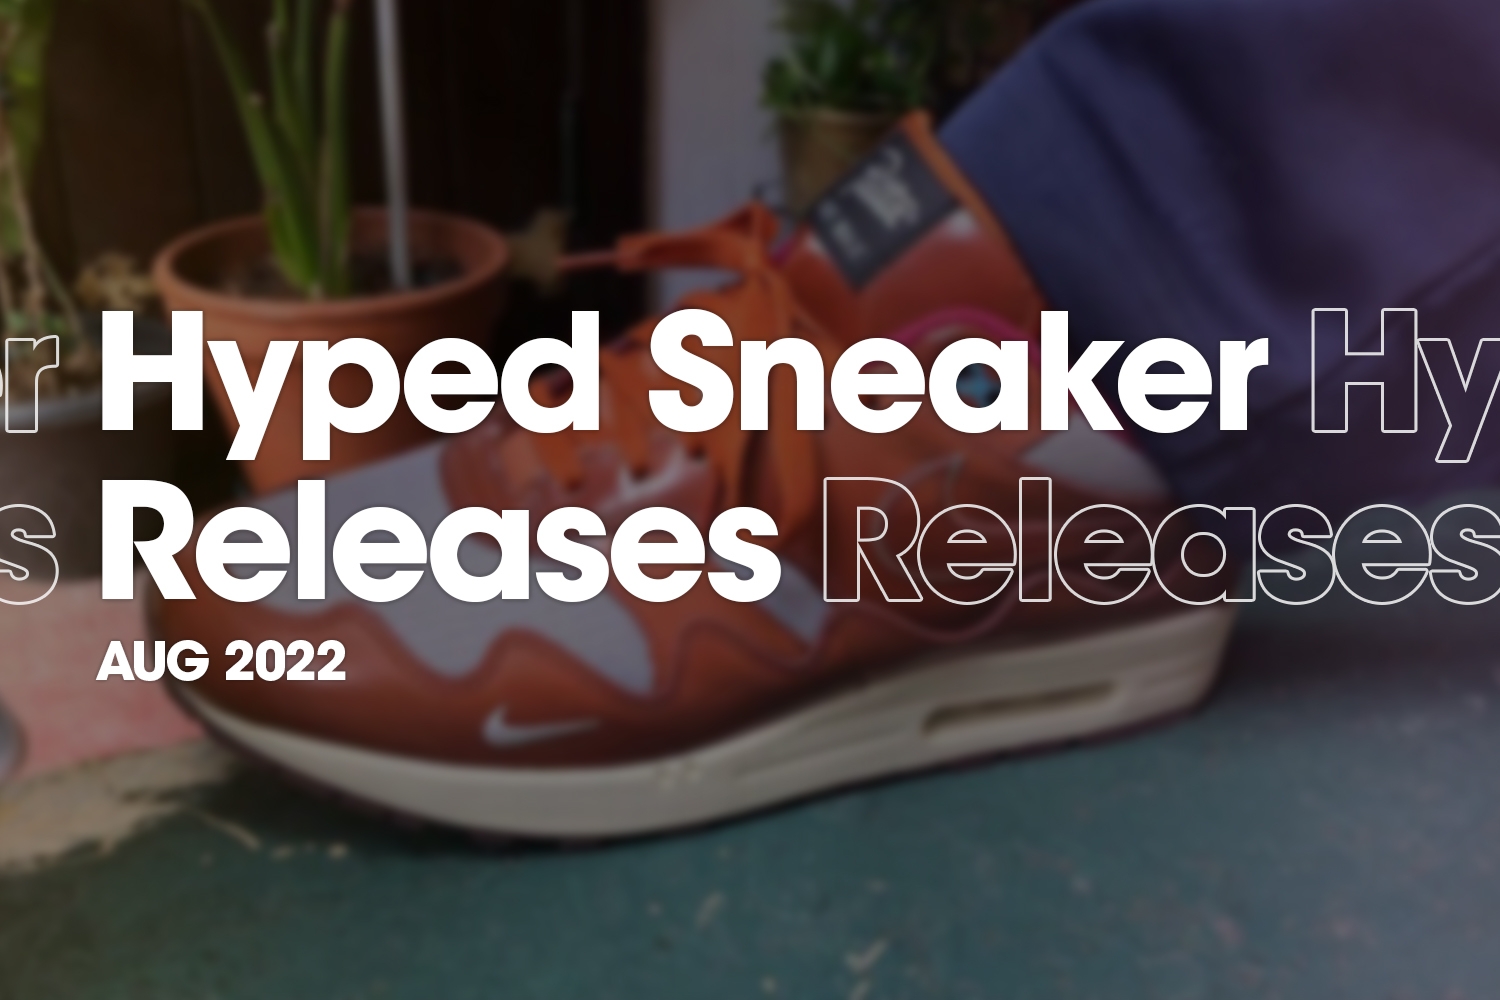 Hyped Sneaker Releases van augustus 2022